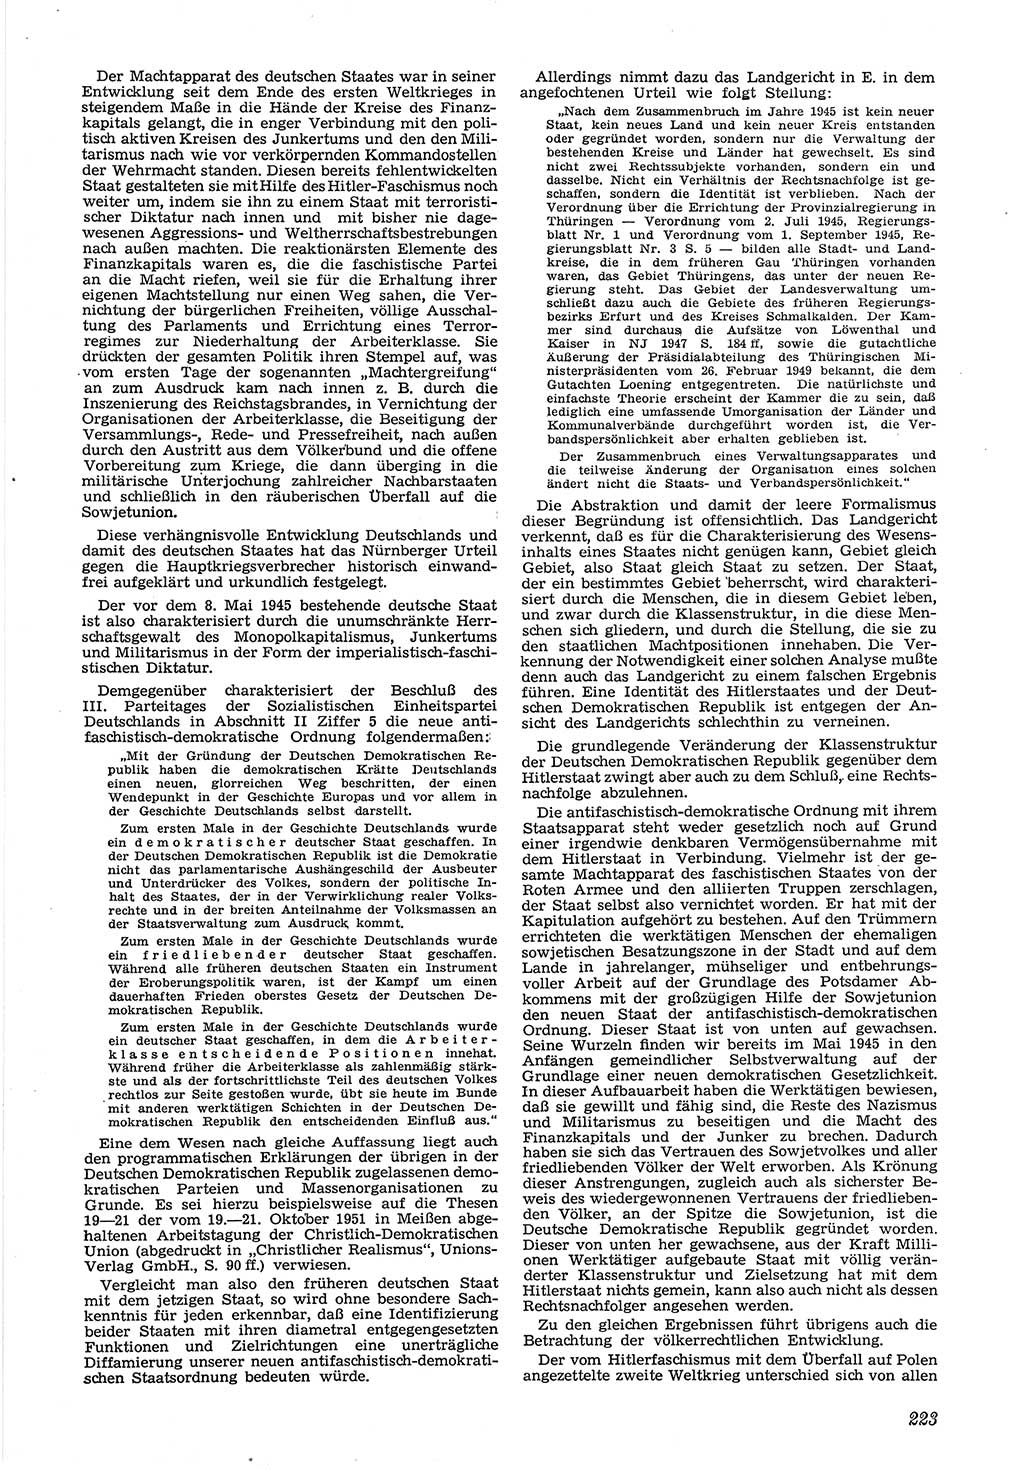 Neue Justiz (NJ), Zeitschrift für Recht und Rechtswissenschaft [Deutsche Demokratische Republik (DDR)], 6. Jahrgang 1952, Seite 223 (NJ DDR 1952, S. 223)